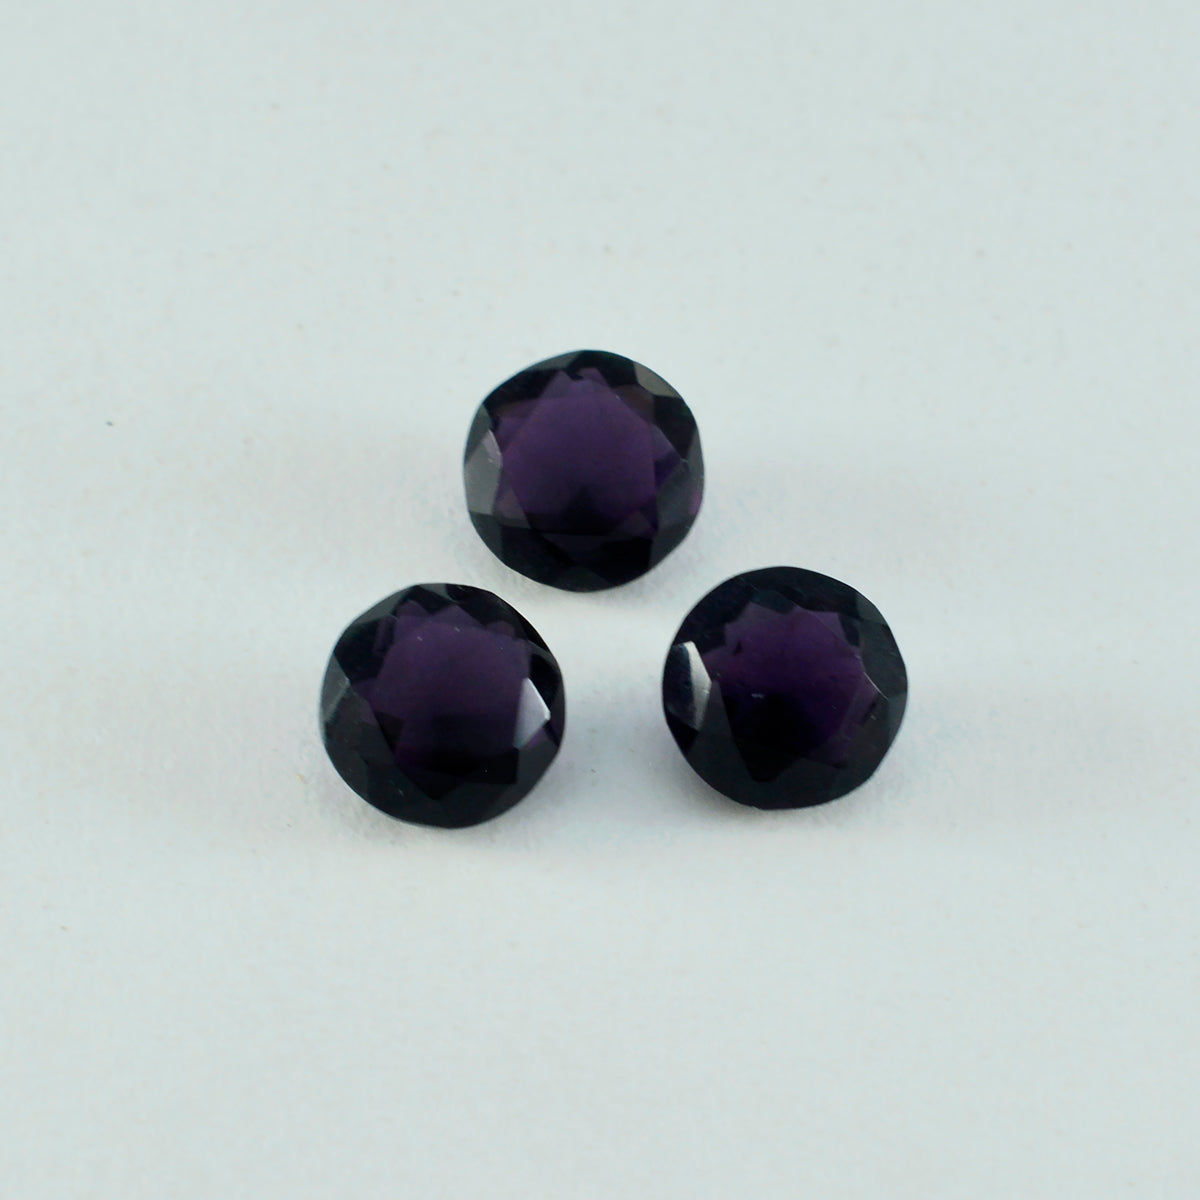 Riyogems 1PC Purple Amethyst CZ Faceted 11x11 mm Round Shape pretty Quality Gems